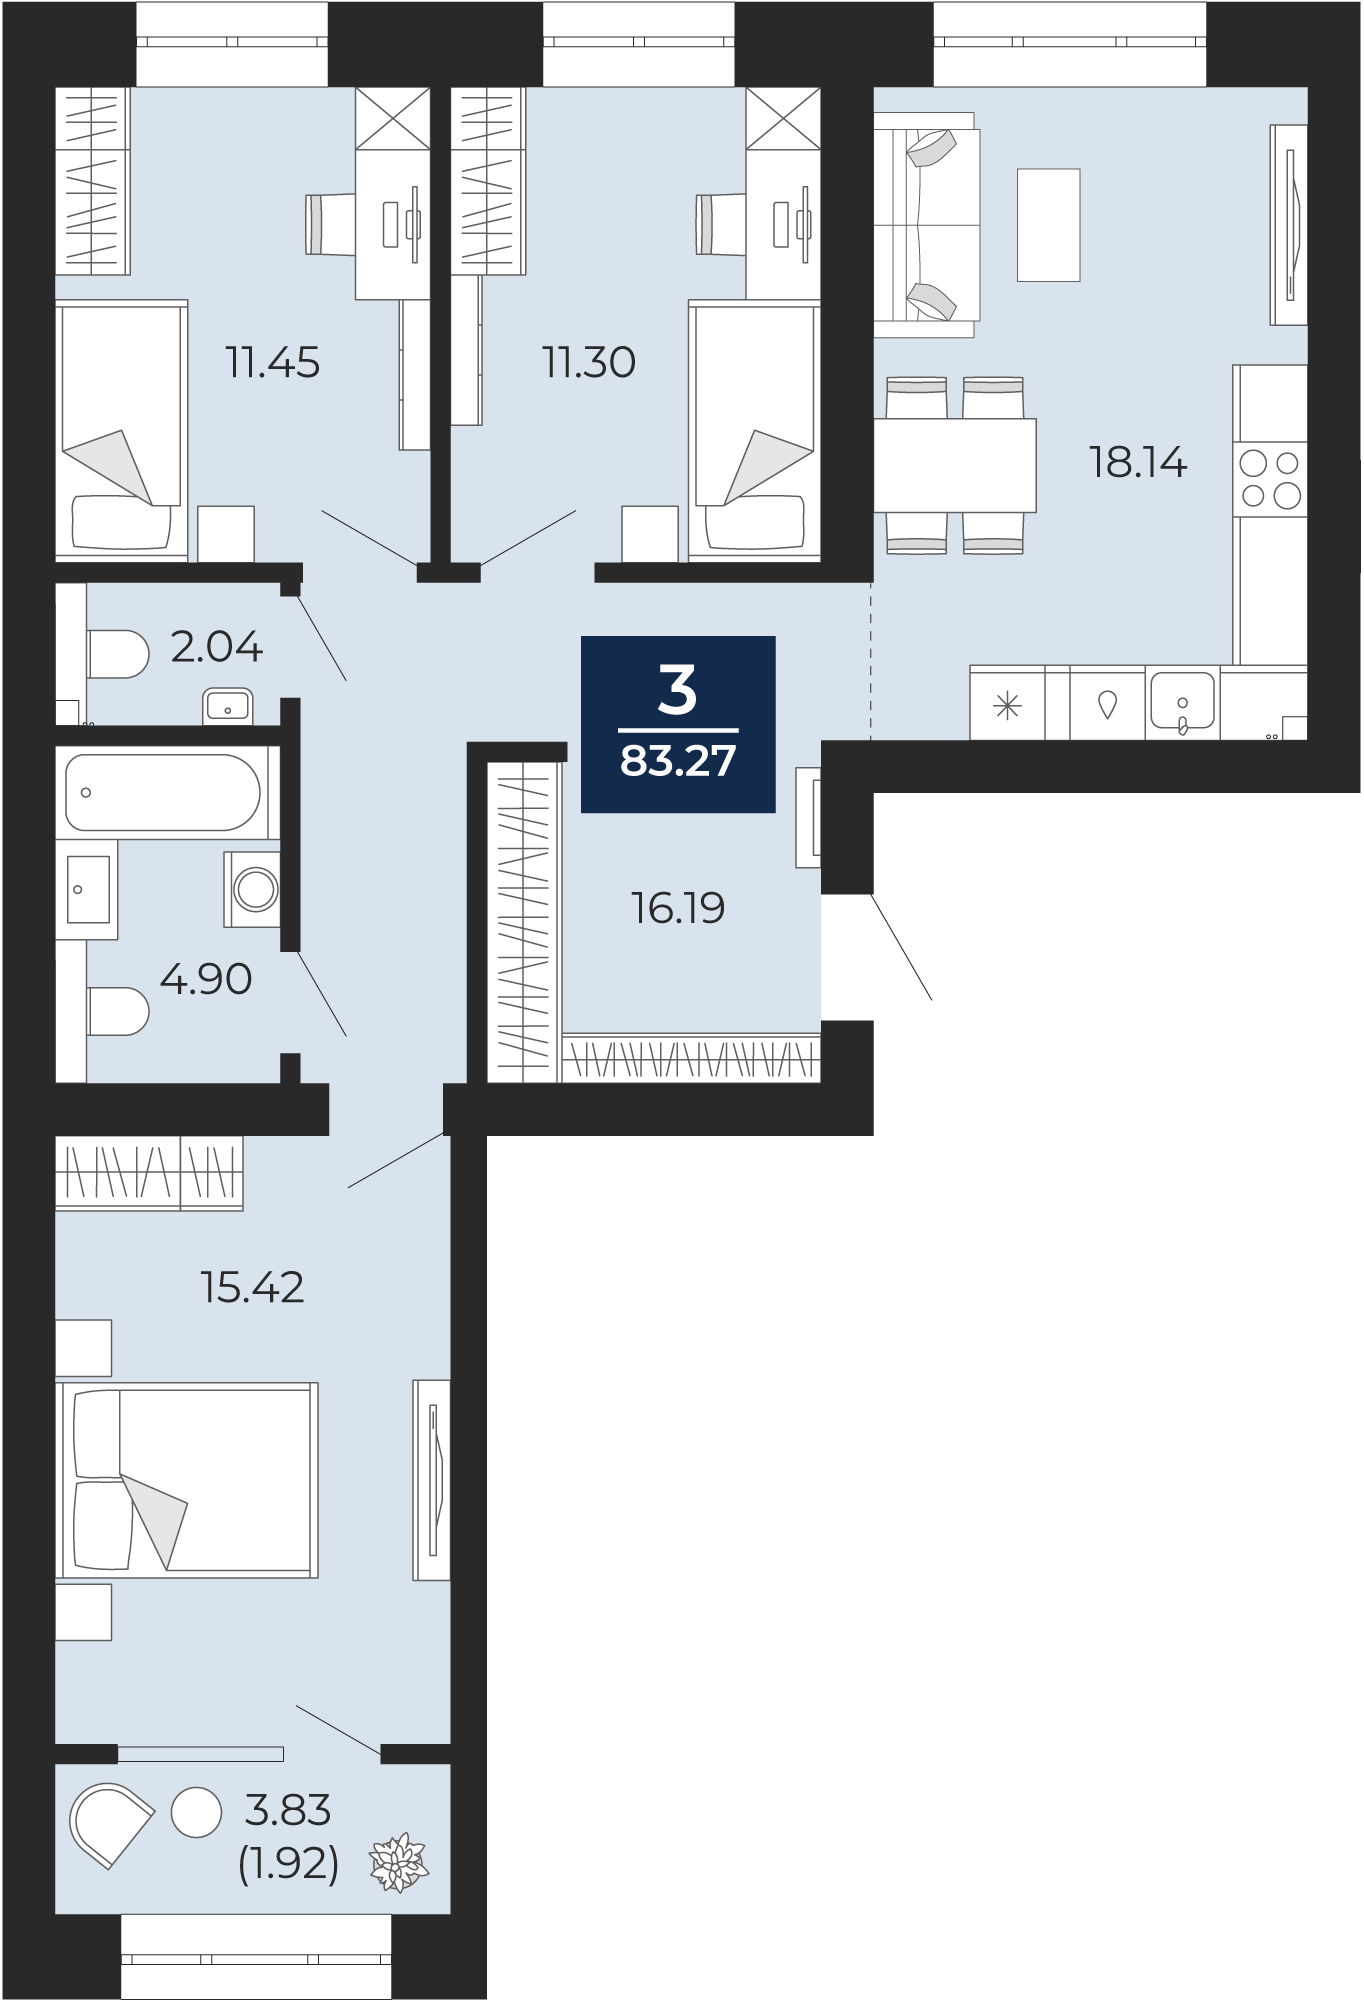 Квартира № 99, 3-комнатная, 83.27 кв. м, 3 этаж